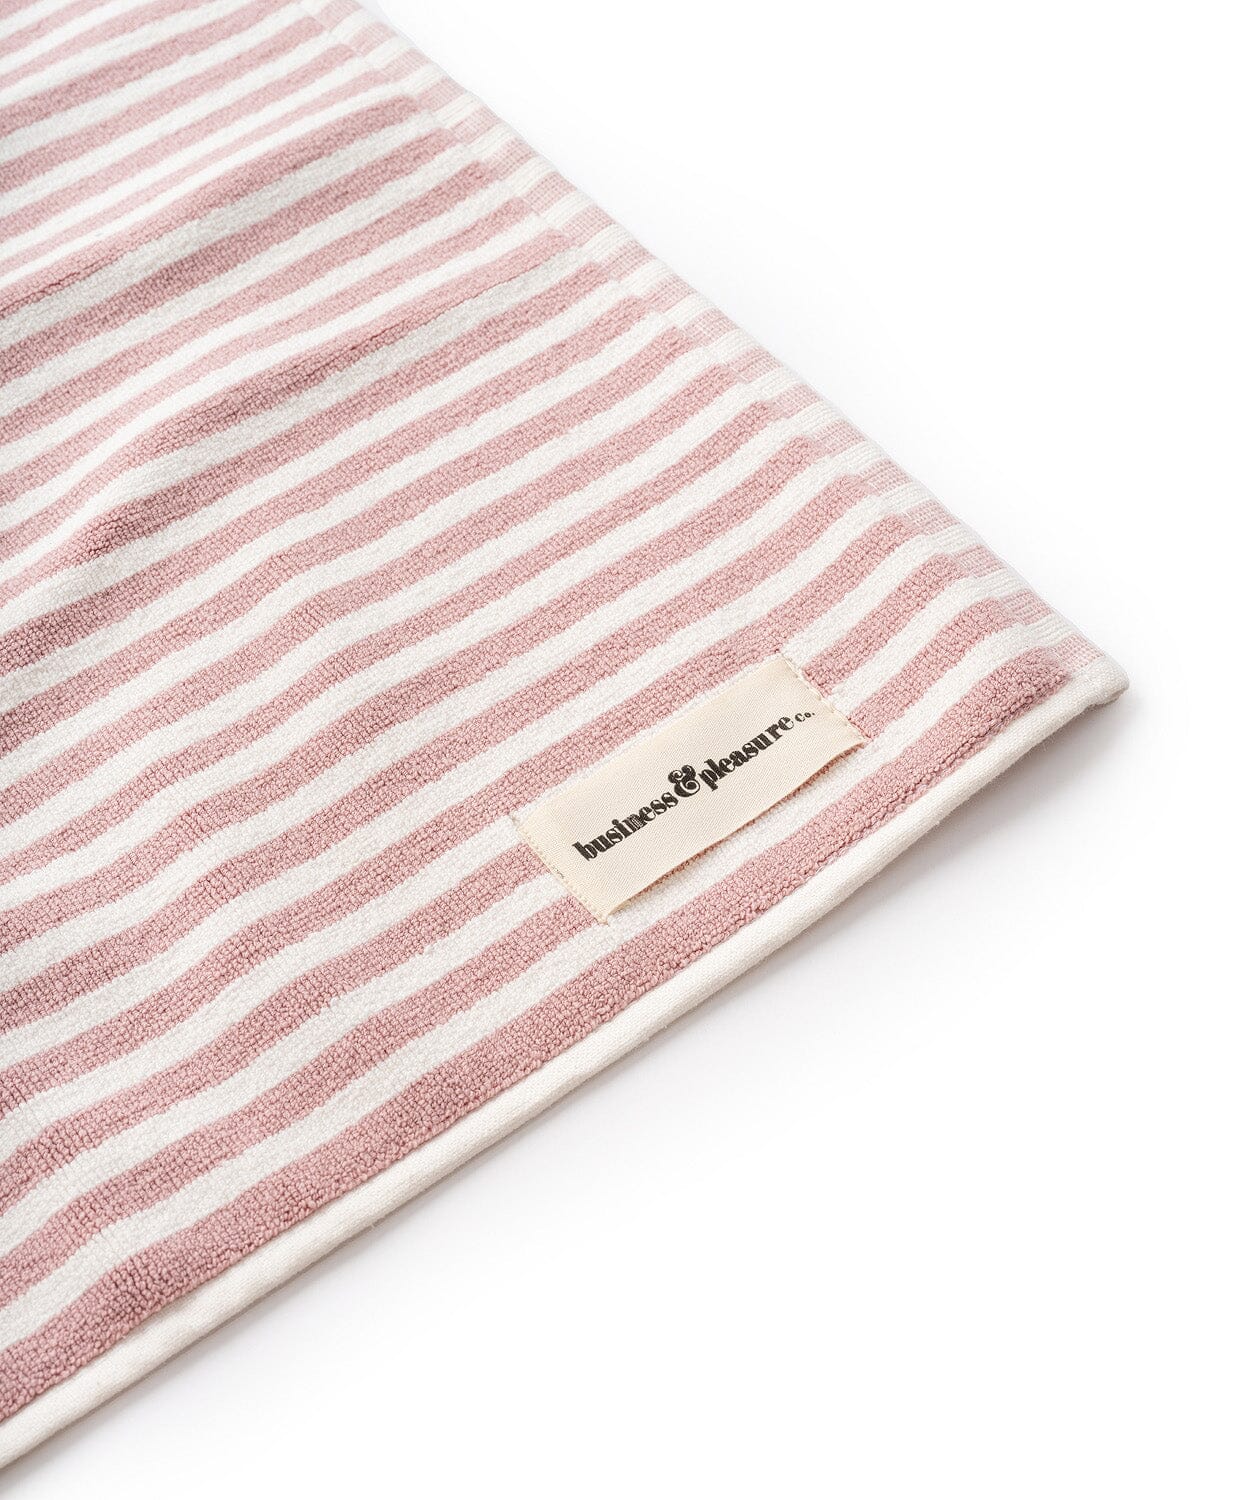 The Bath Mat - Lauren's Pink Stripe Bath Mat Business & Pleasure Co 